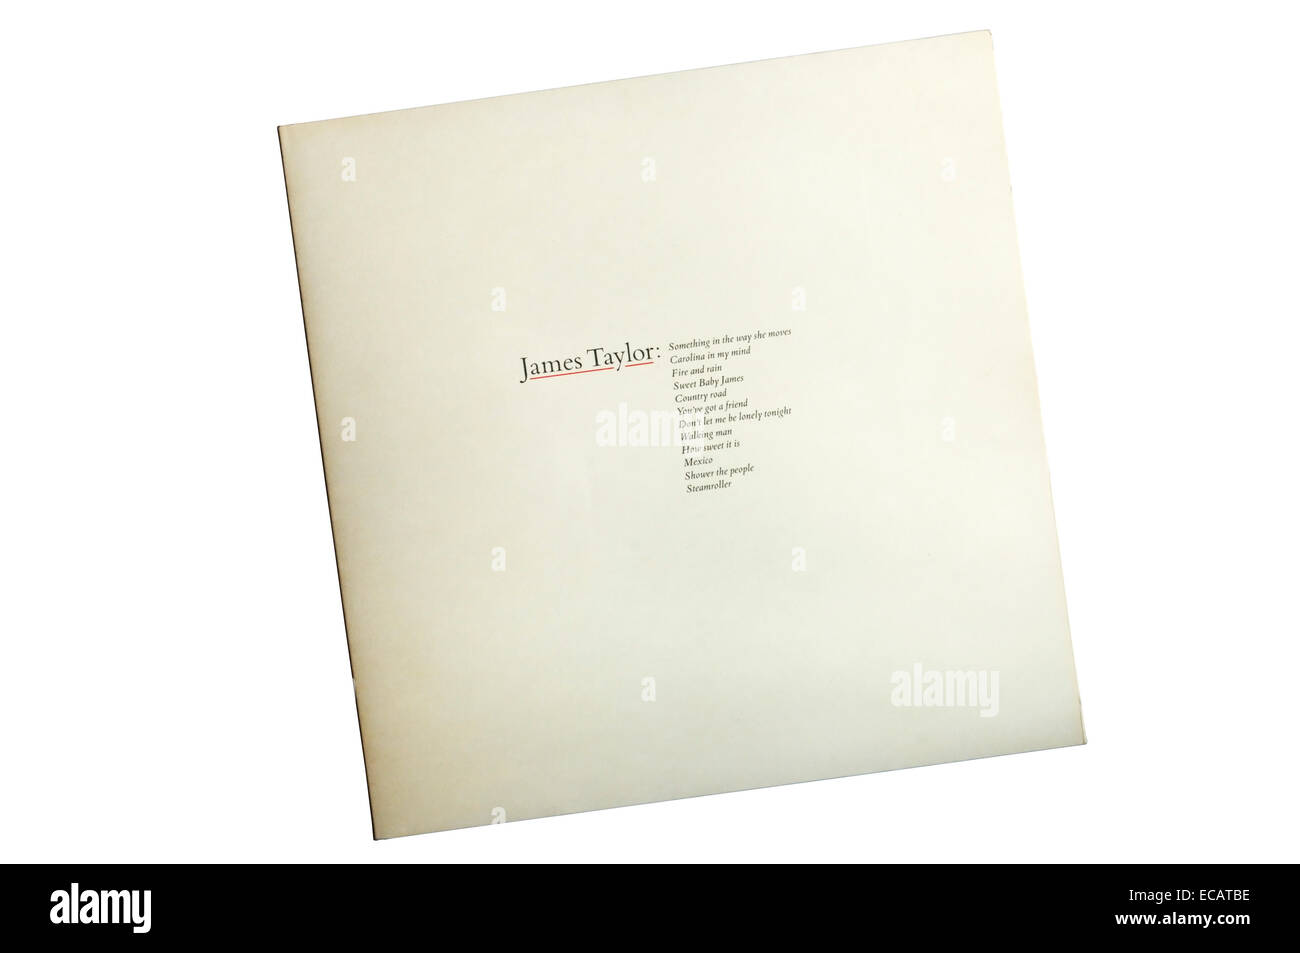 Greatest Hits è stato il cantante-cantautore James Taylor ottavo album. È stato rilasciato nel 1976. Foto Stock